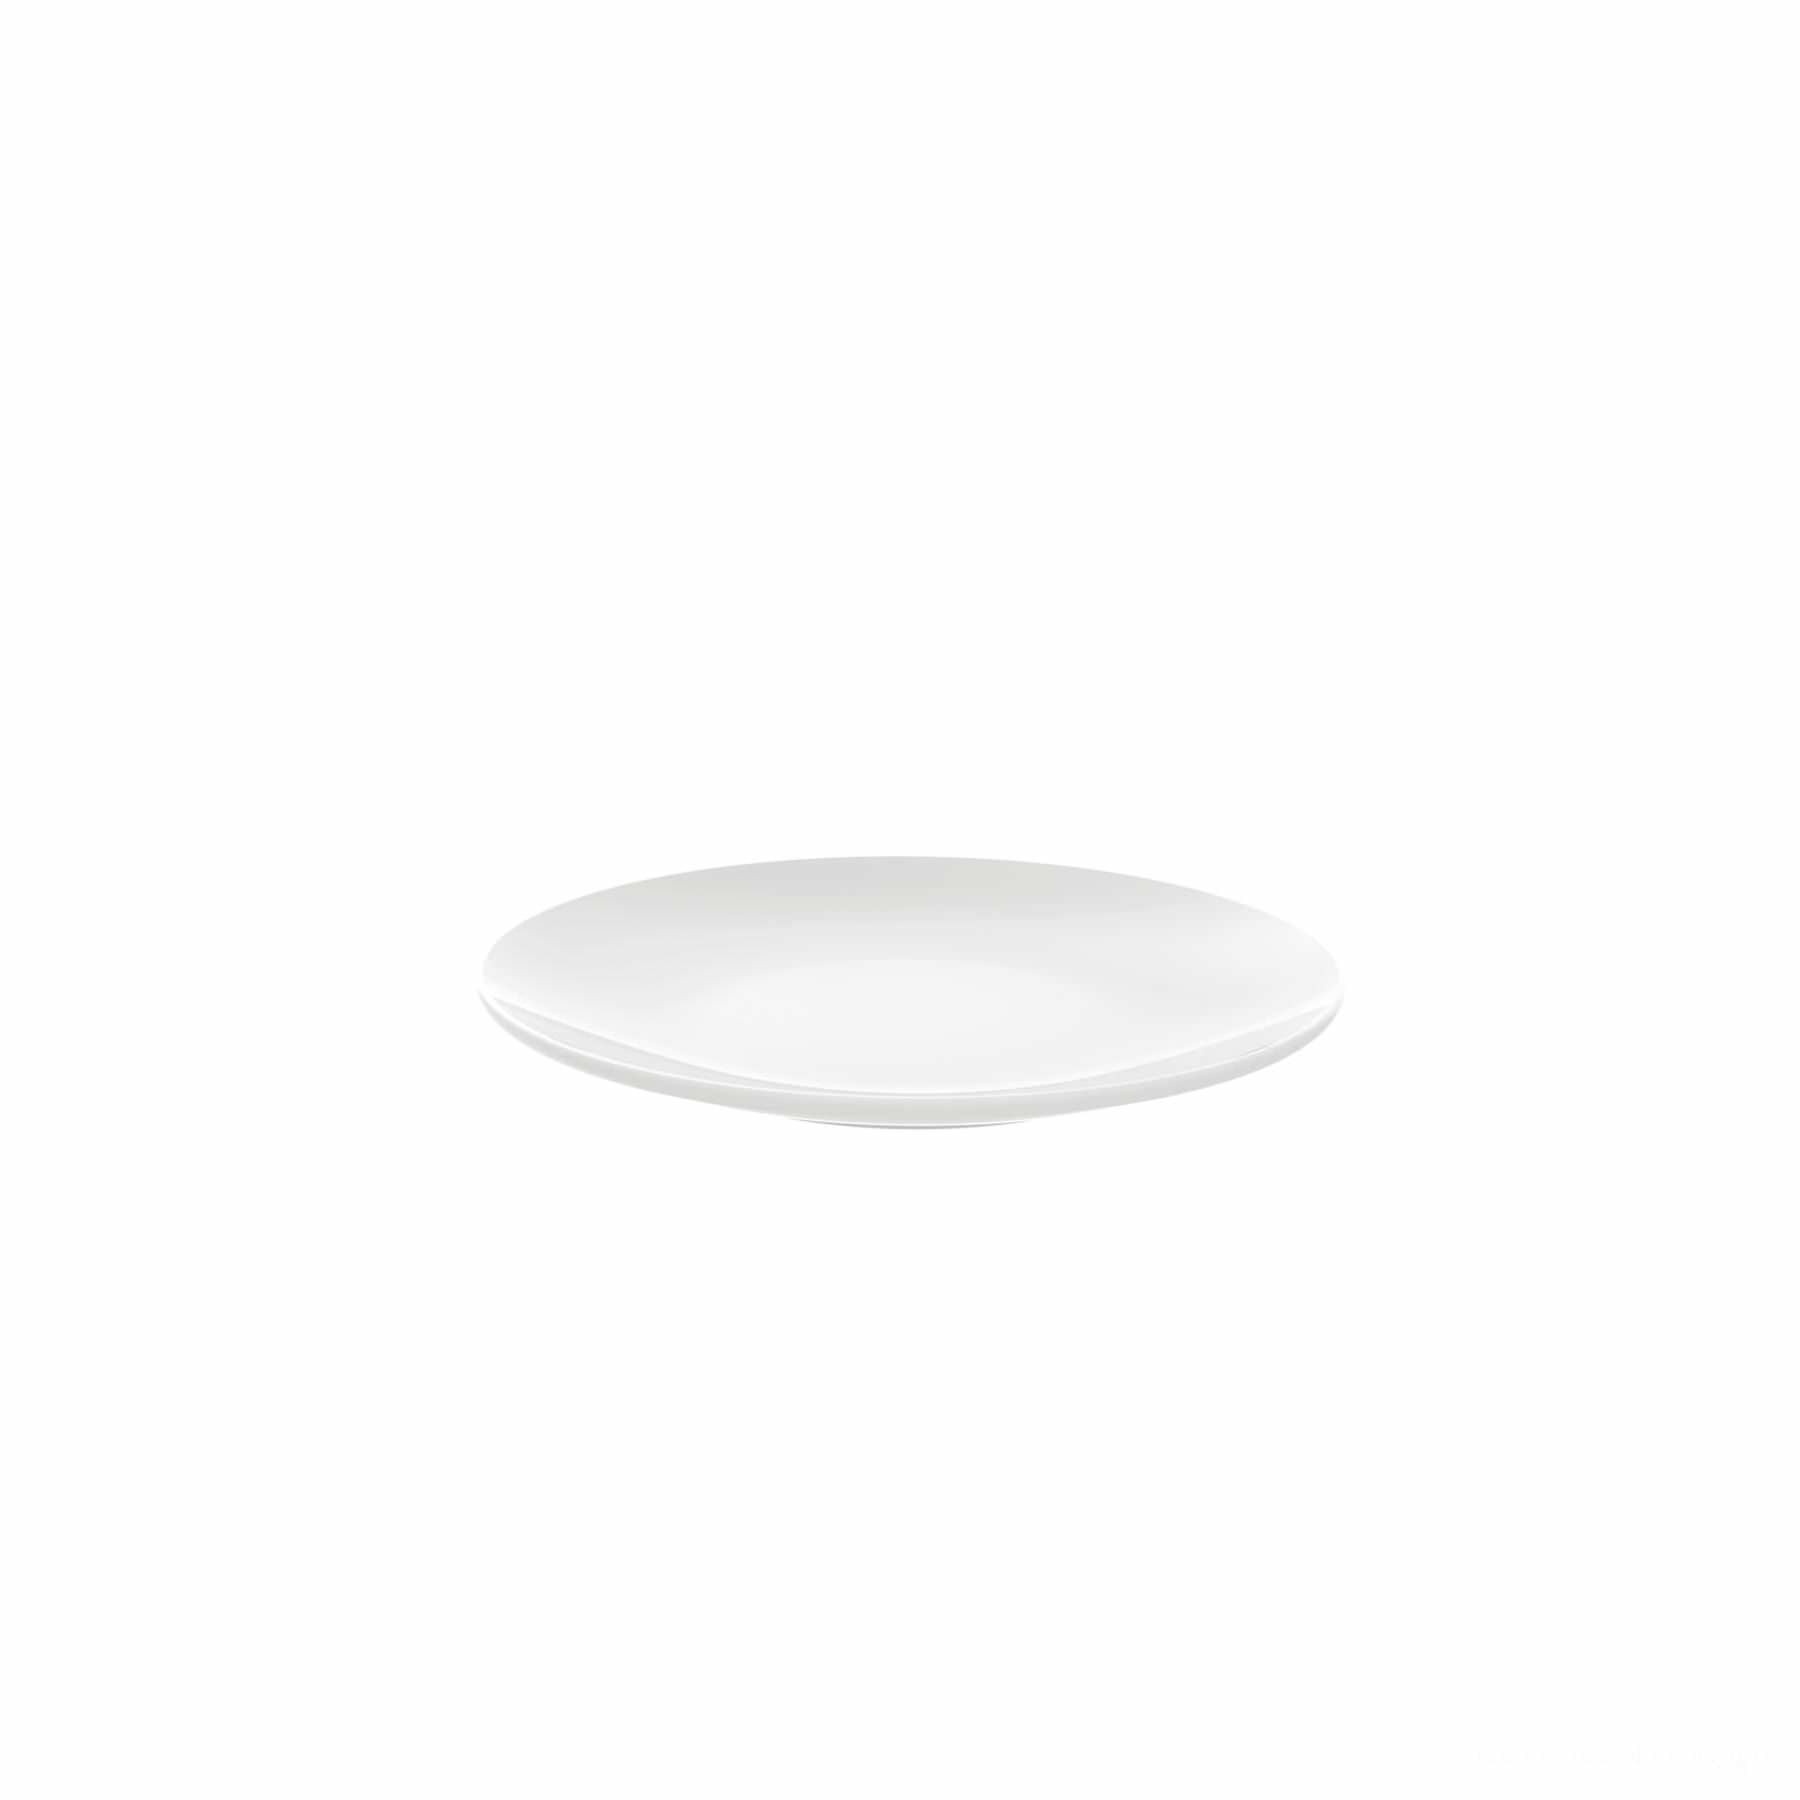 Prato Sobremesa Jacqueline em Porcelana Branca 19 cm